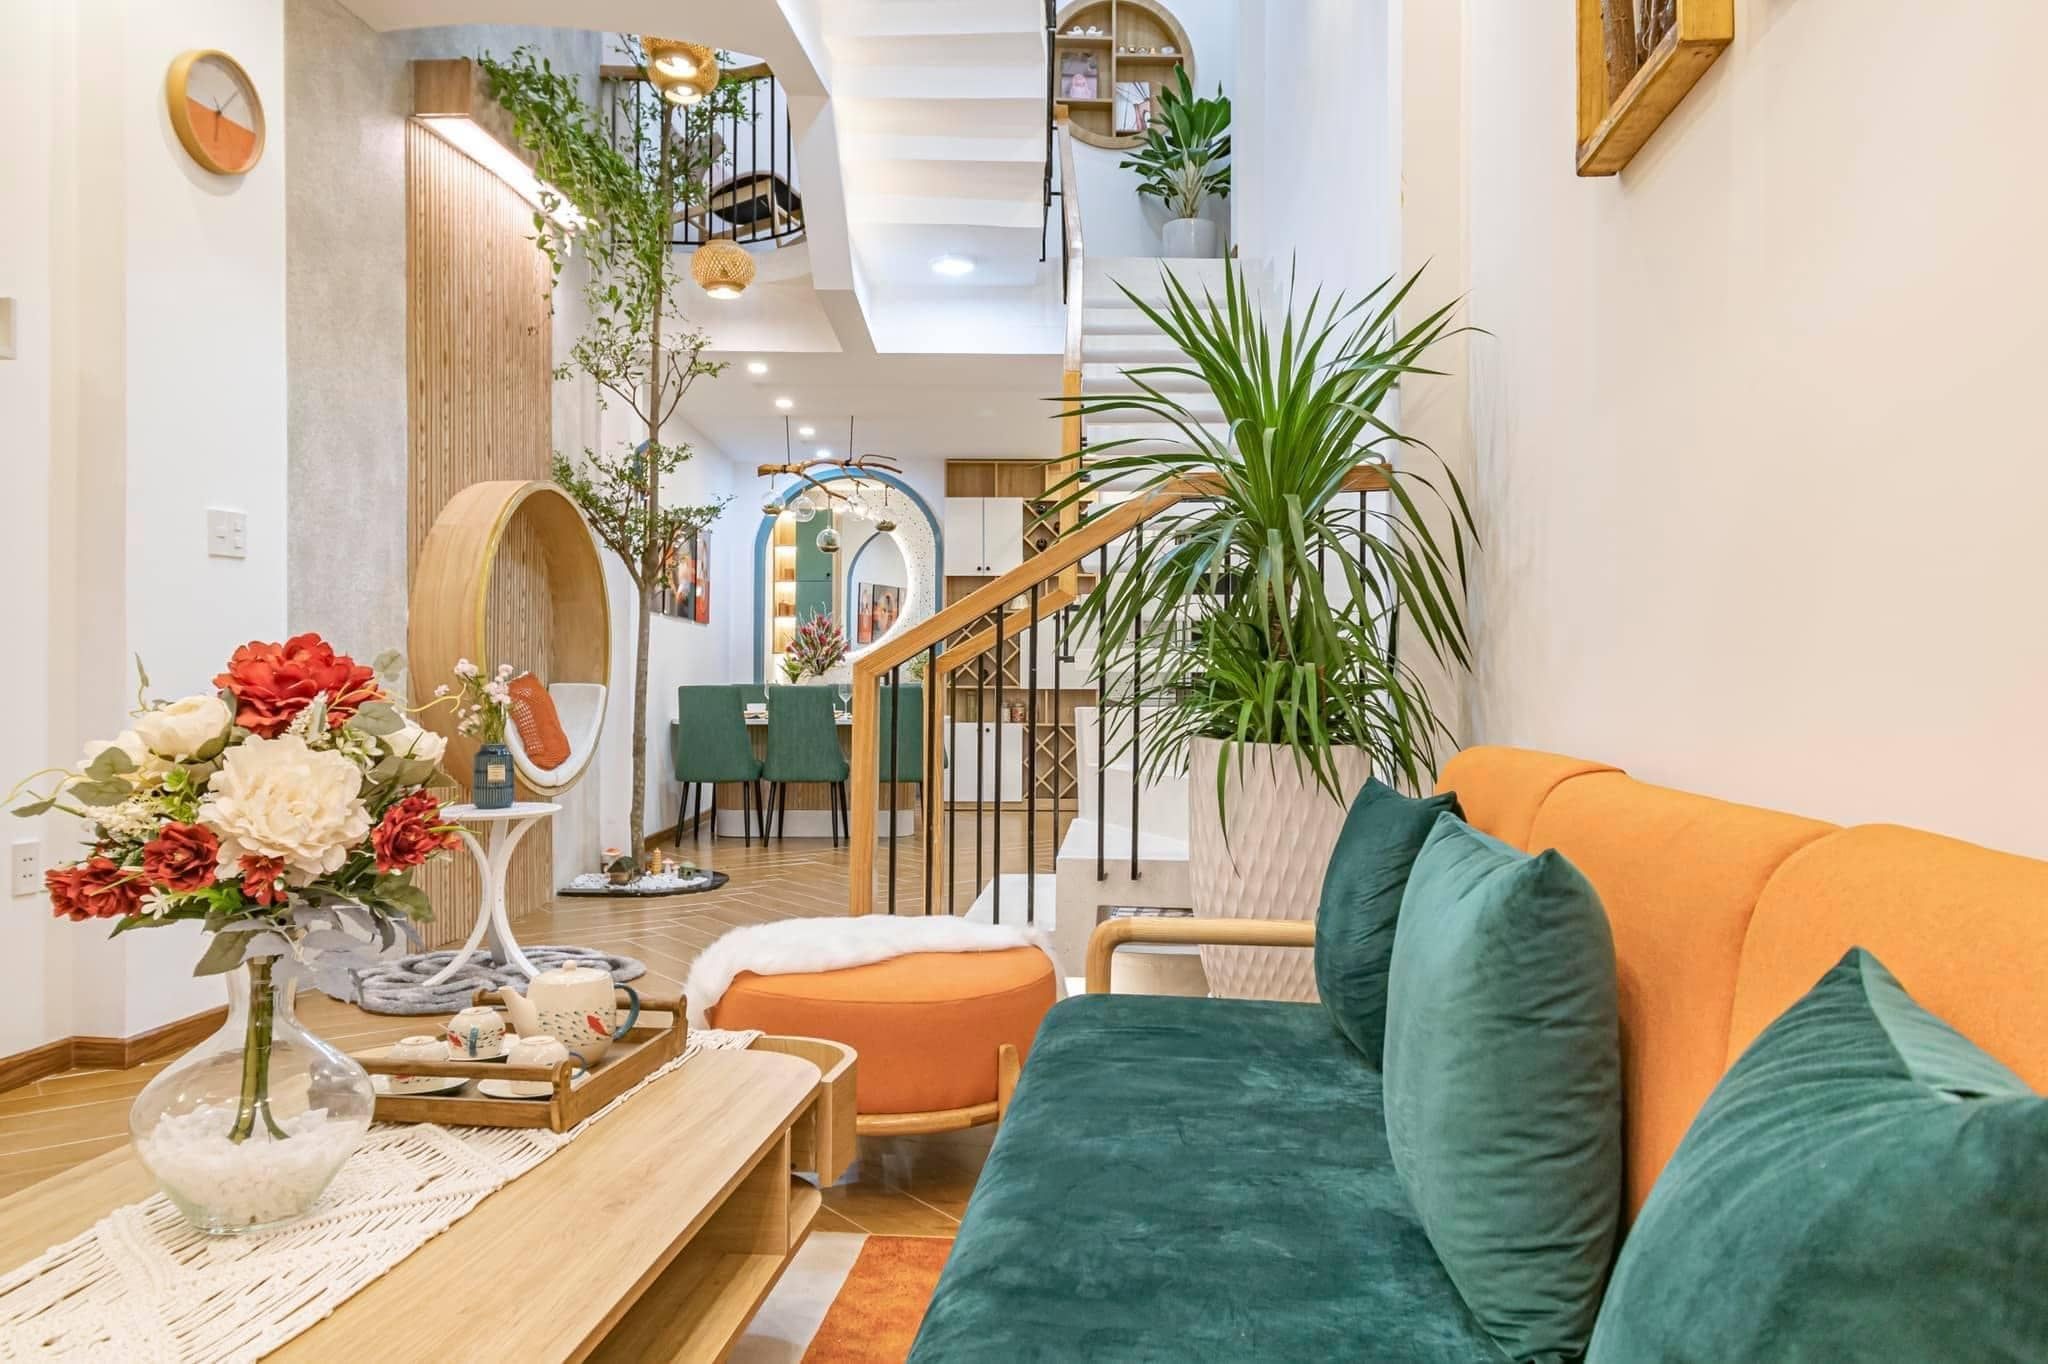 Phòng khách hiện đại sử dụng nội thất gam màu cam, xanh nổi bật làm điểm nhấn thú vị